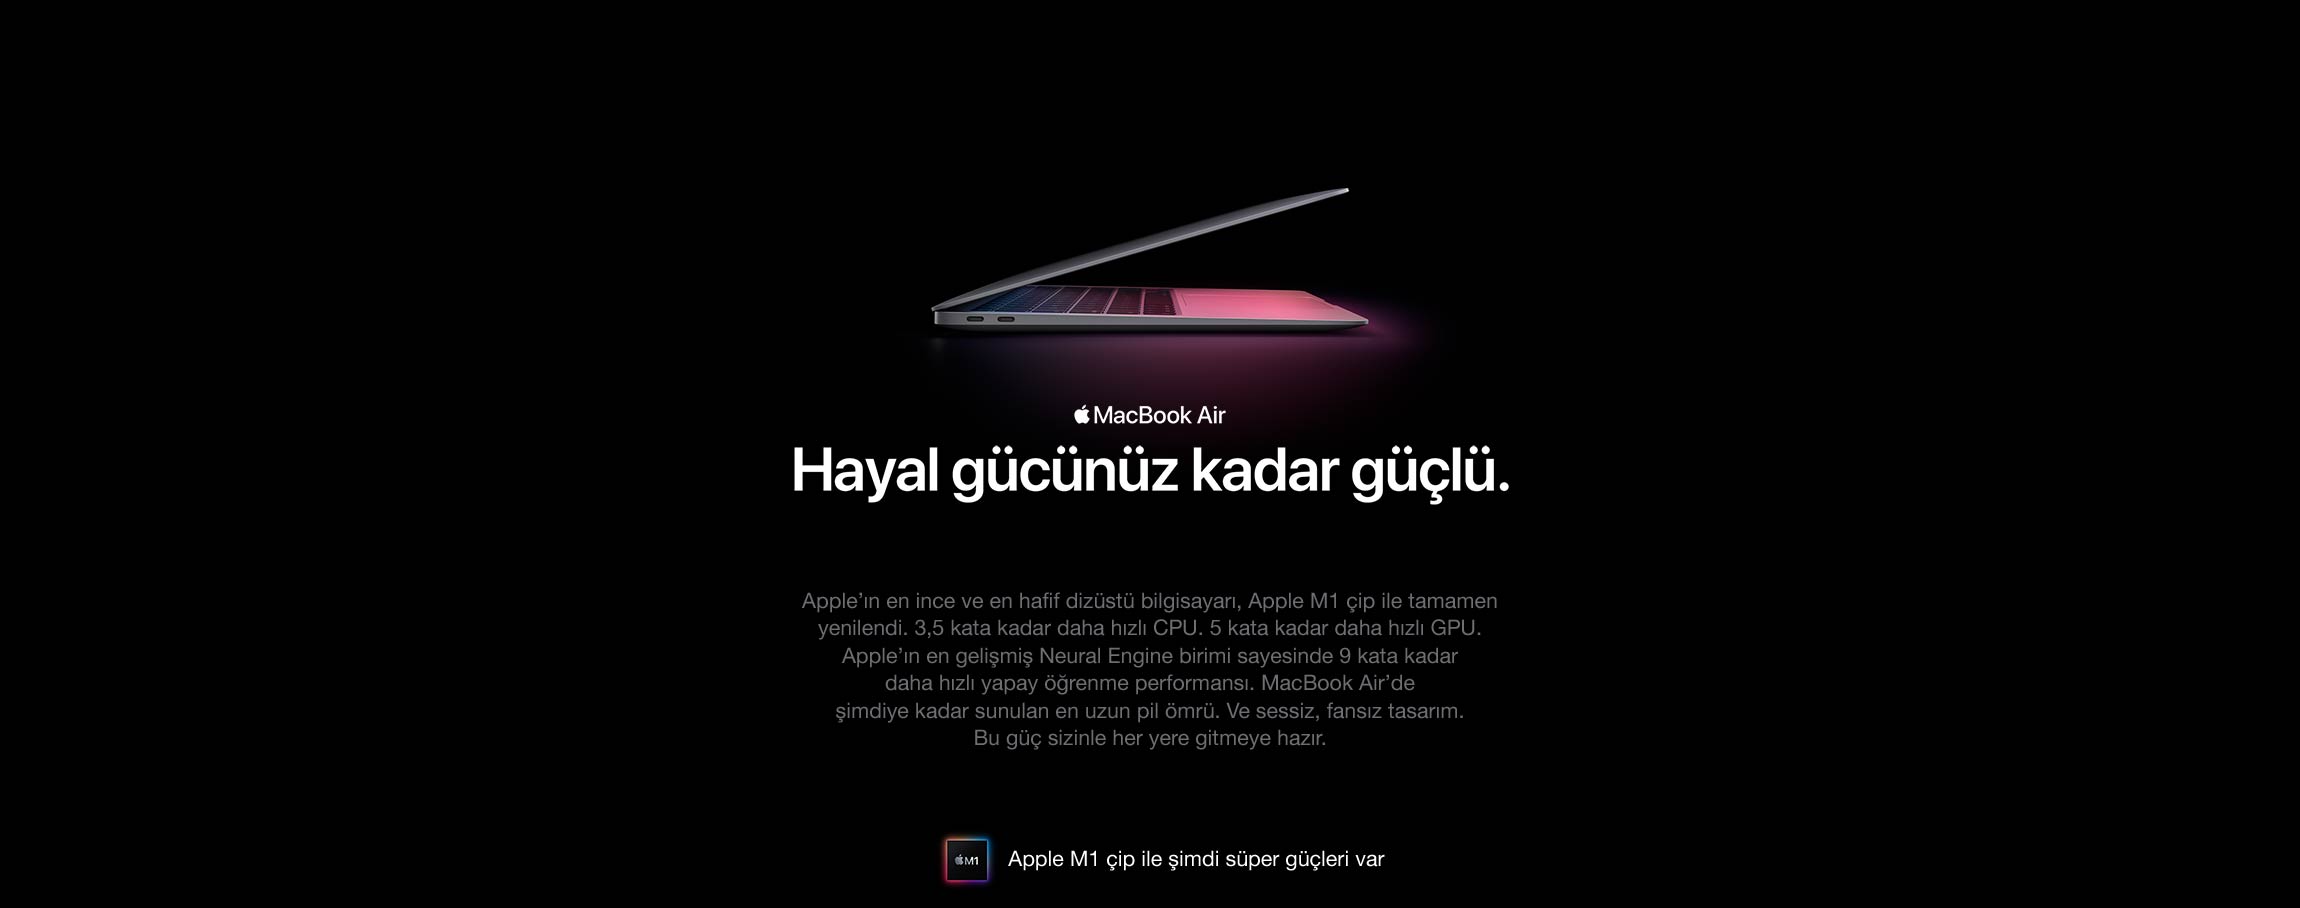 Macbook Air açıklama görseli